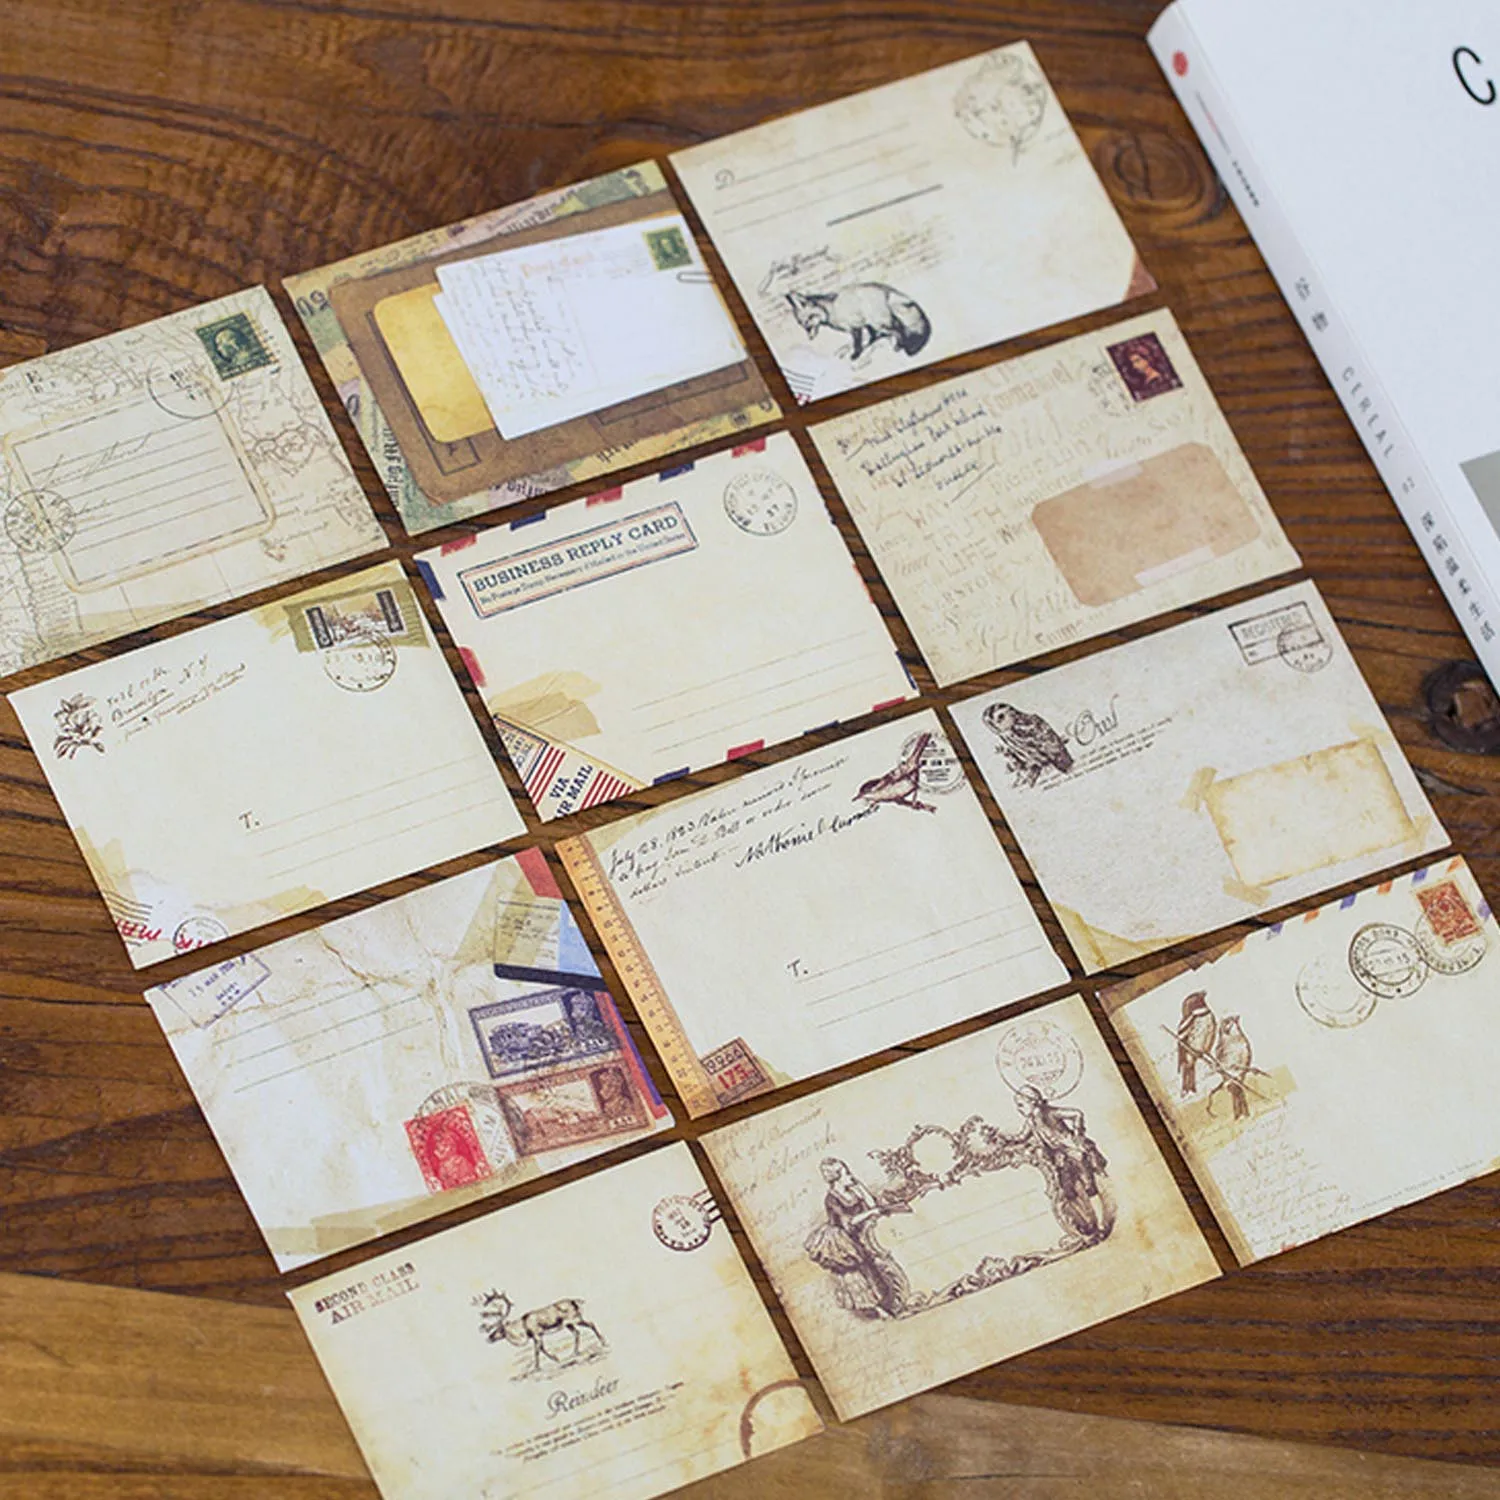 36 шт./набор, мини юбка-пачка в стиле ретро Винтаж Европейский Стиль конверты для Скрапбукинг поздравительная открытка на Рождество или день рождения, подарочные карты 4x3 дюйма